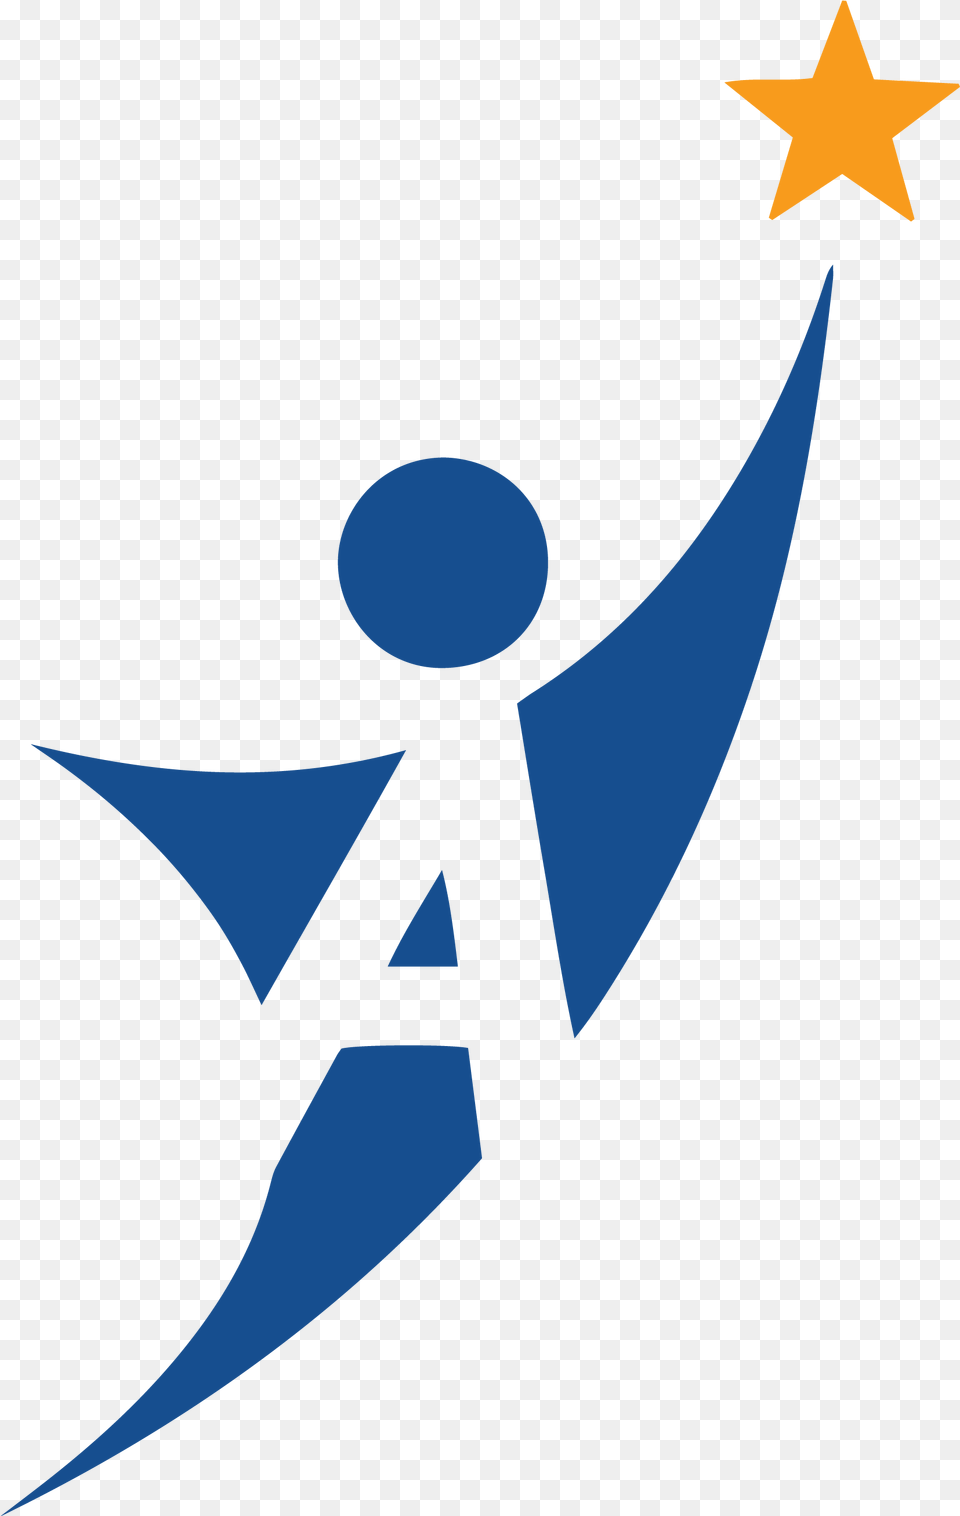 A Star Logo 1 Ou0027darah Outreach Graphic Design, Symbol, Star Symbol Free Png Download